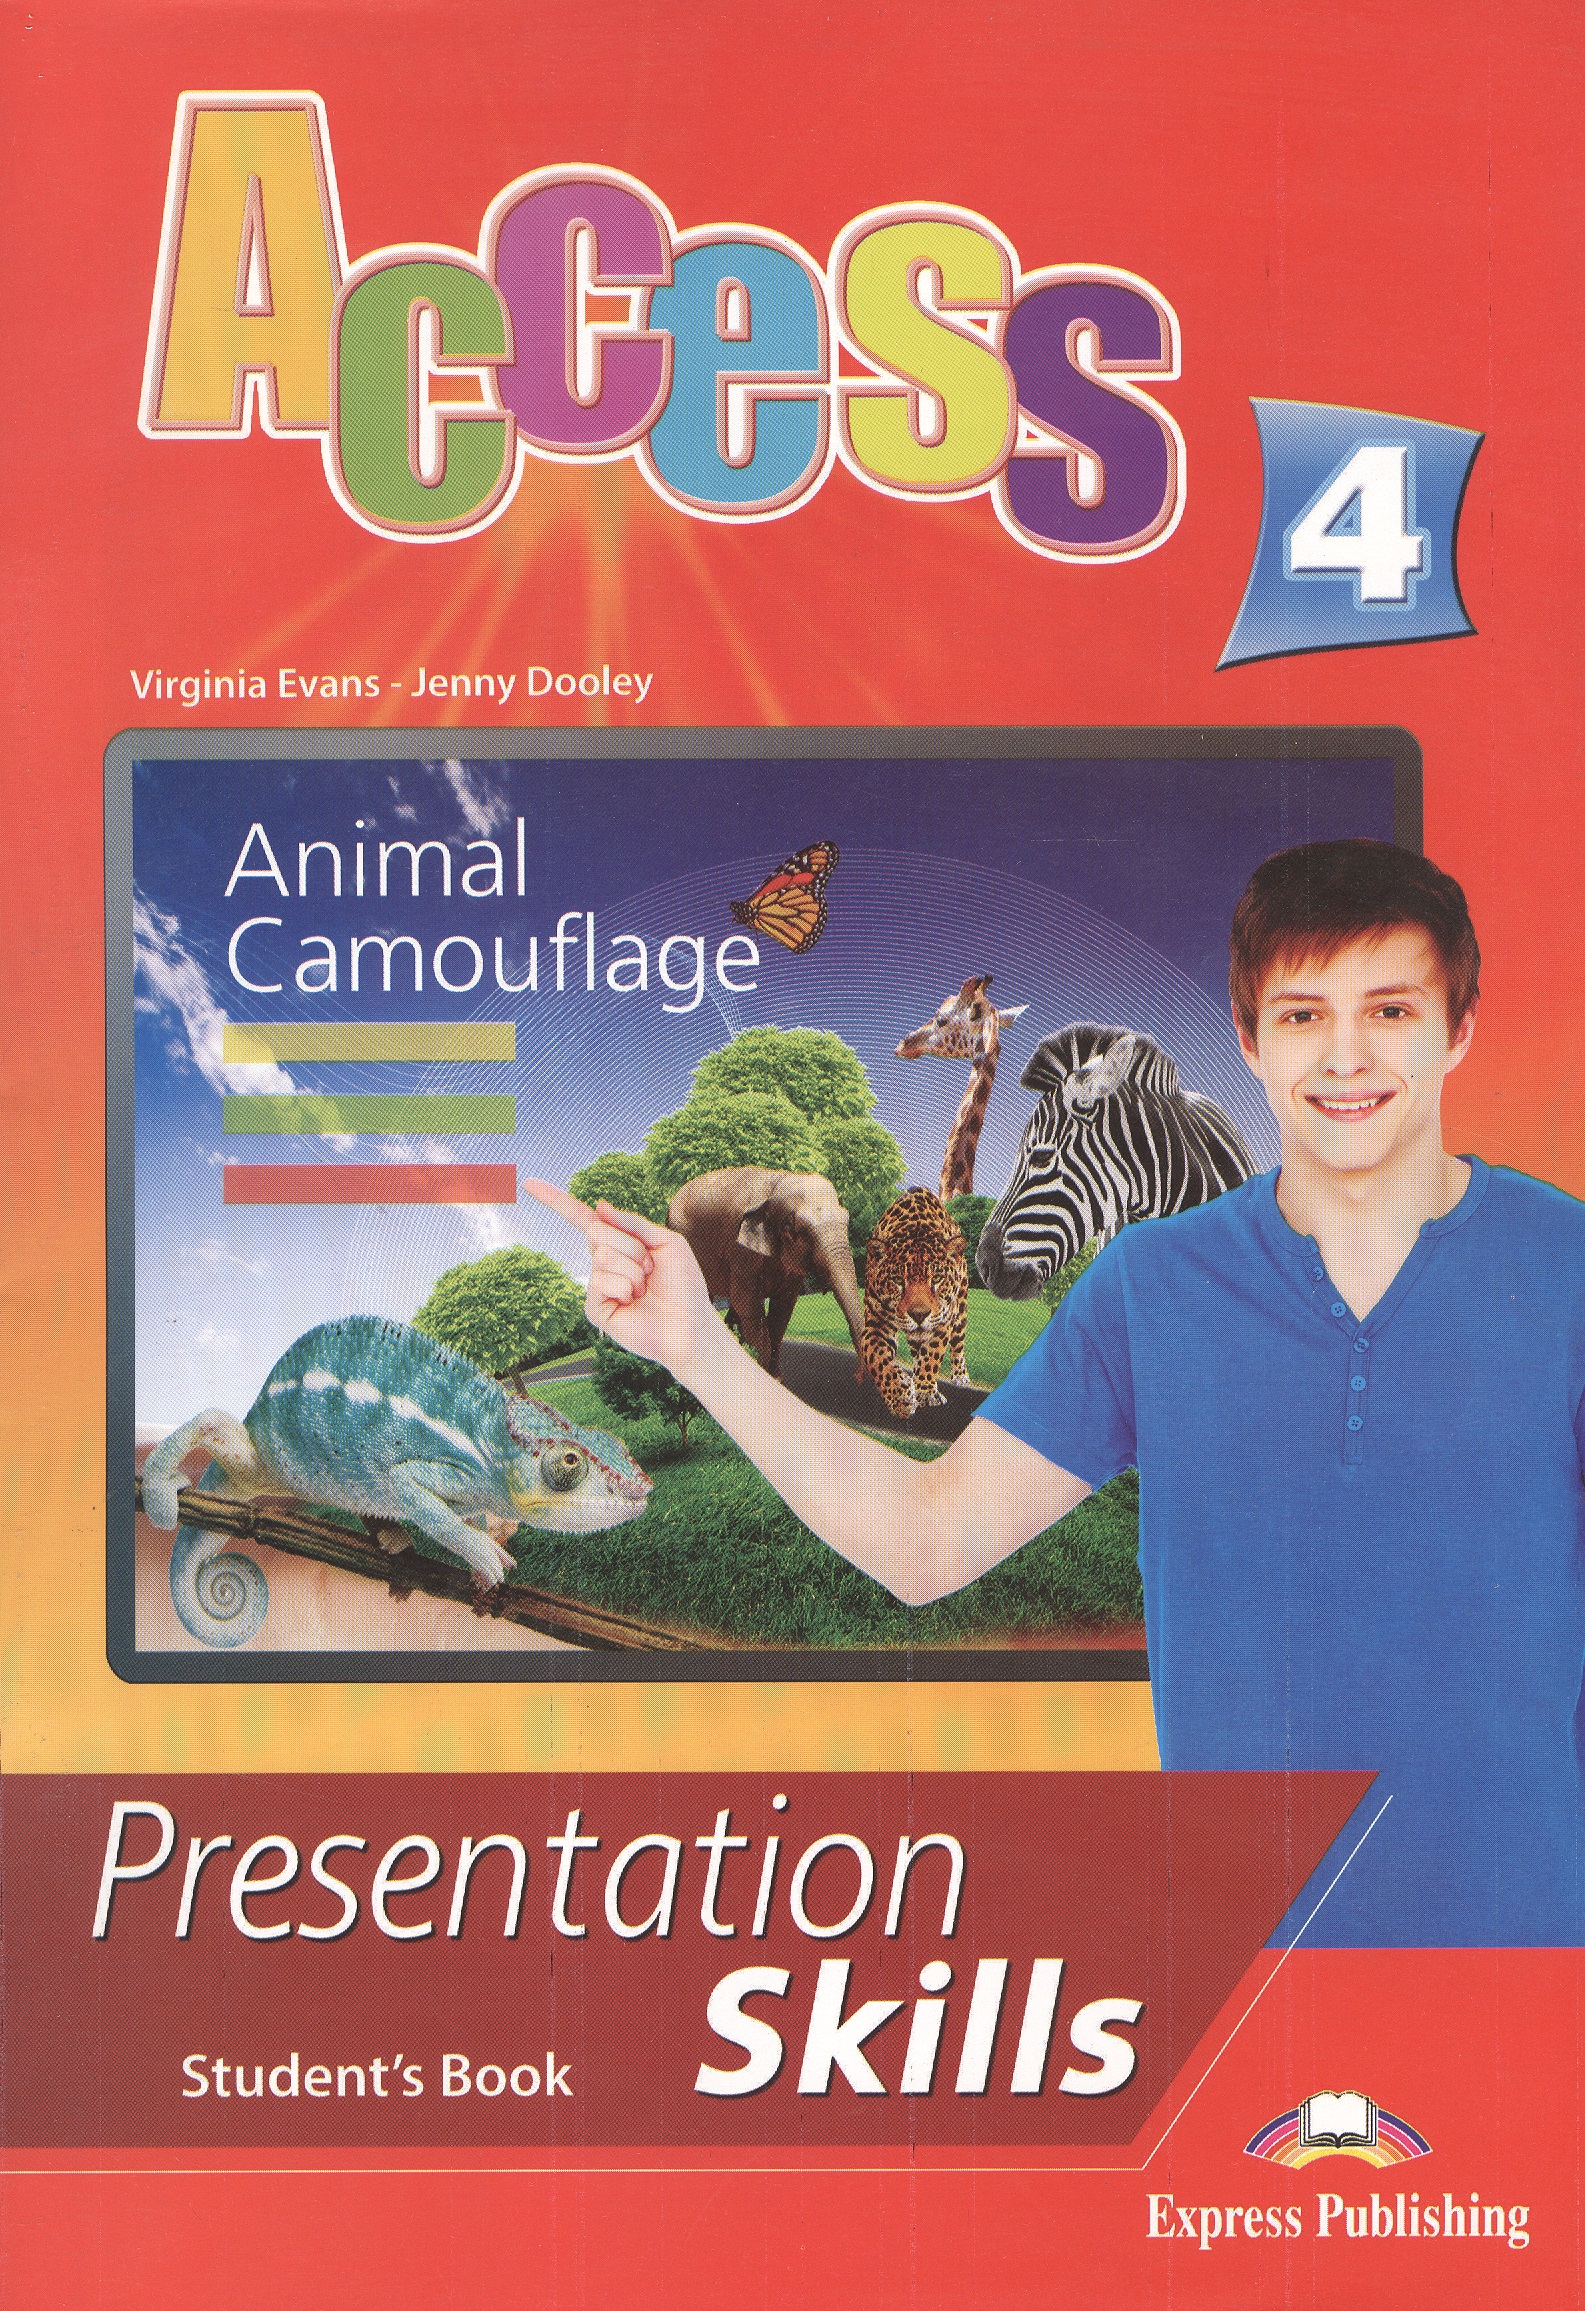 эванс вирджиния access 2 presentation skills student s book Эванс Вирджиния Access 4. Presentation Skills. Student's Book